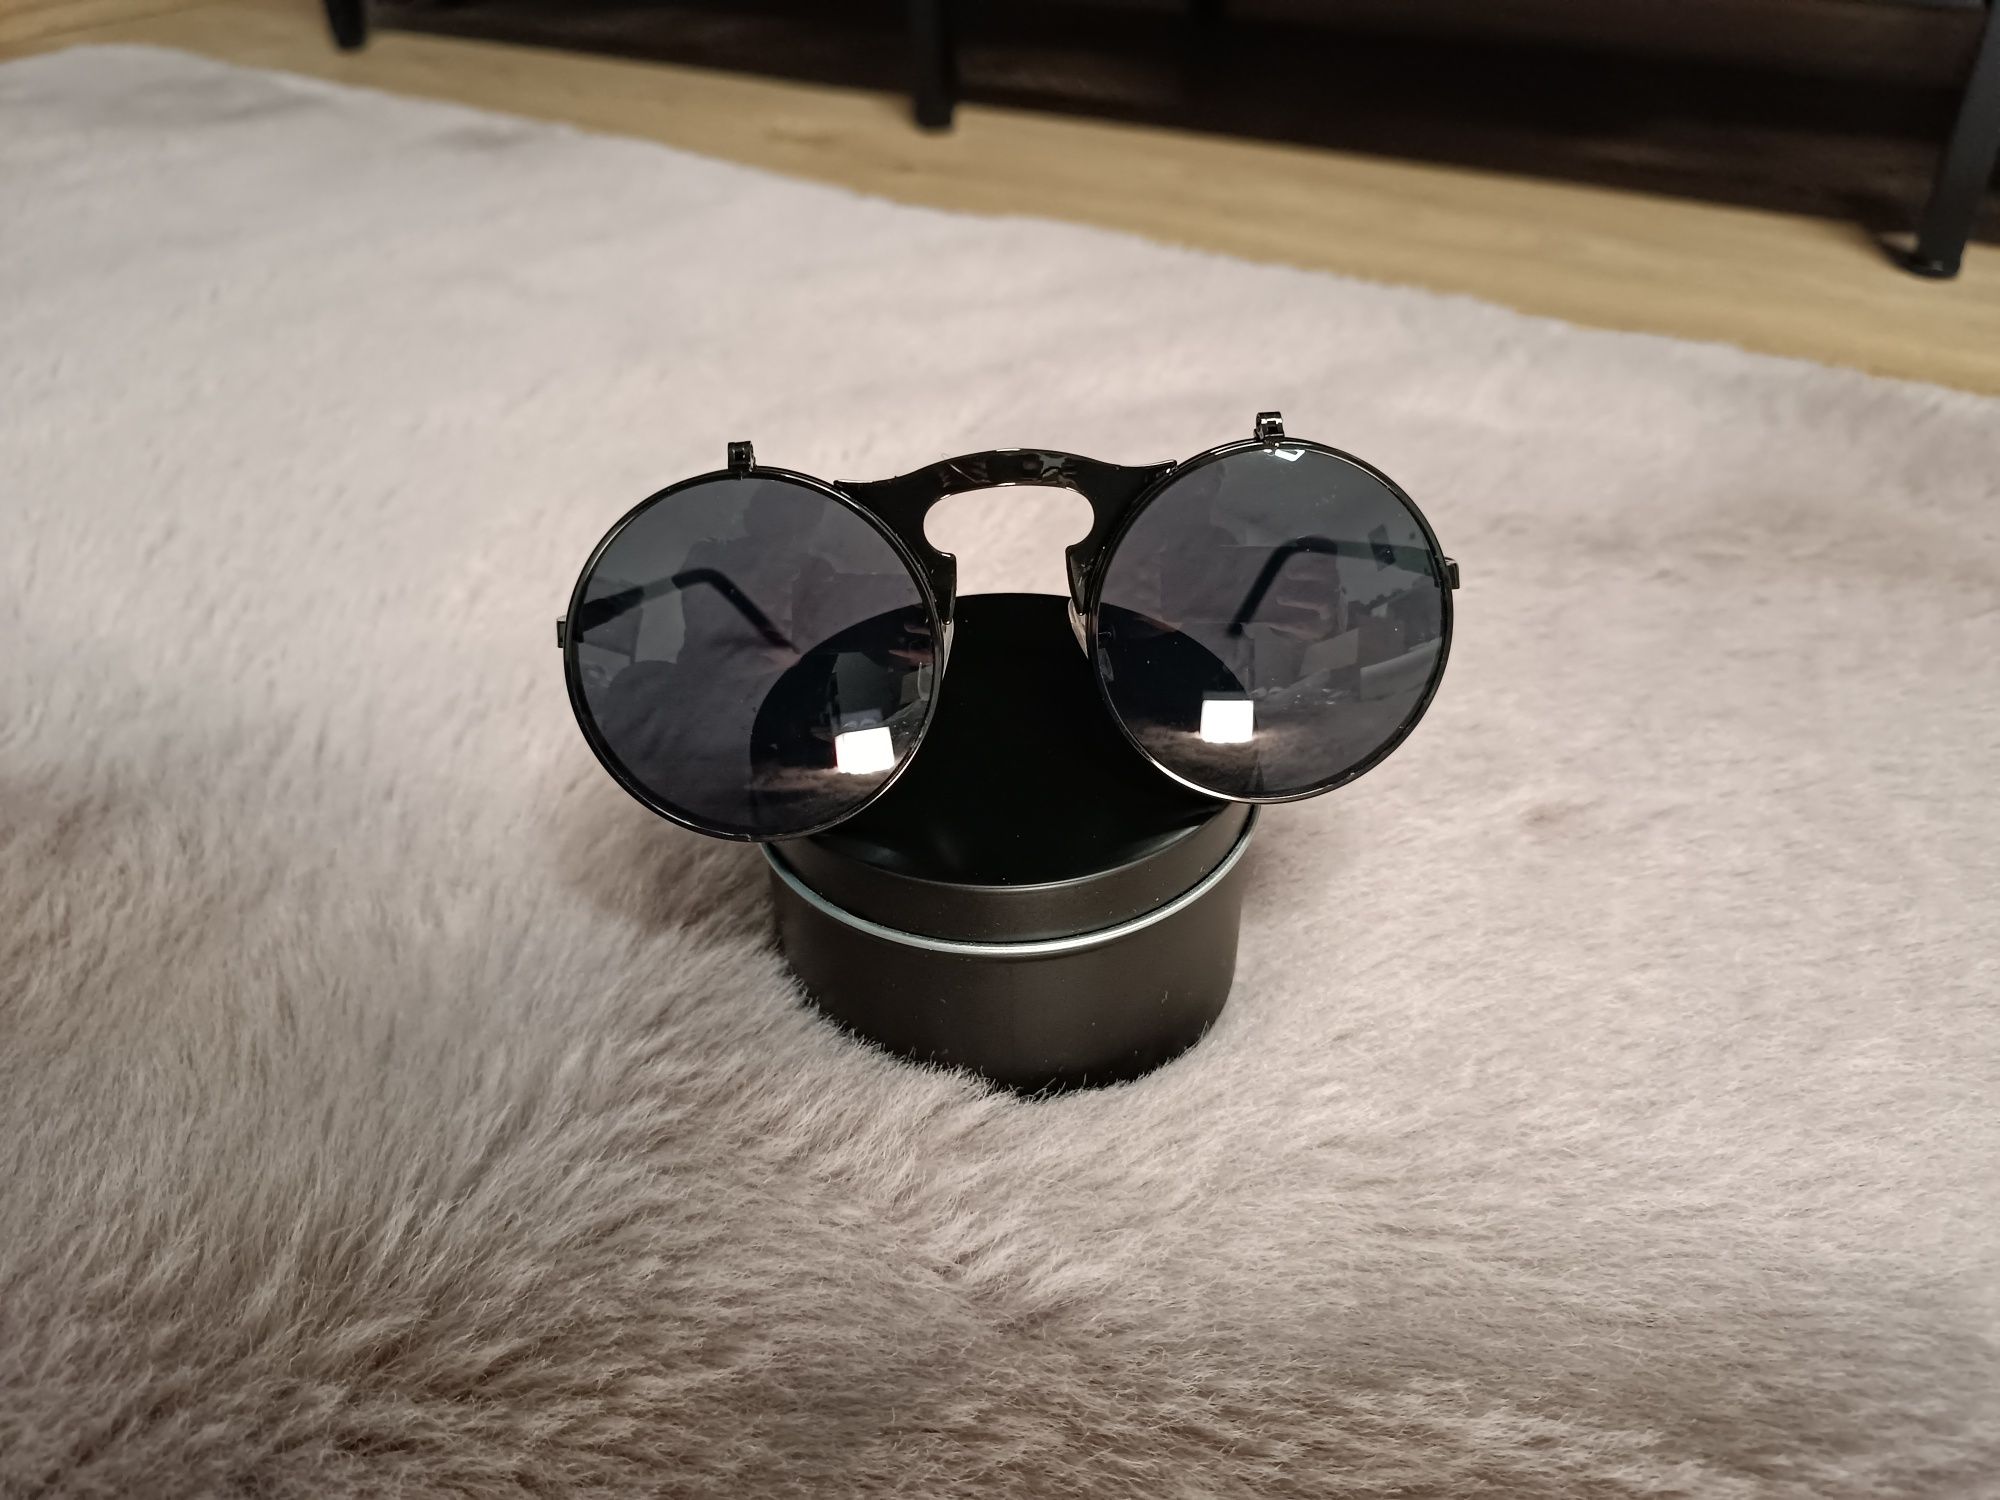 Okulary przeciwsłoneczne okrągłe lenolki steampunk czarne